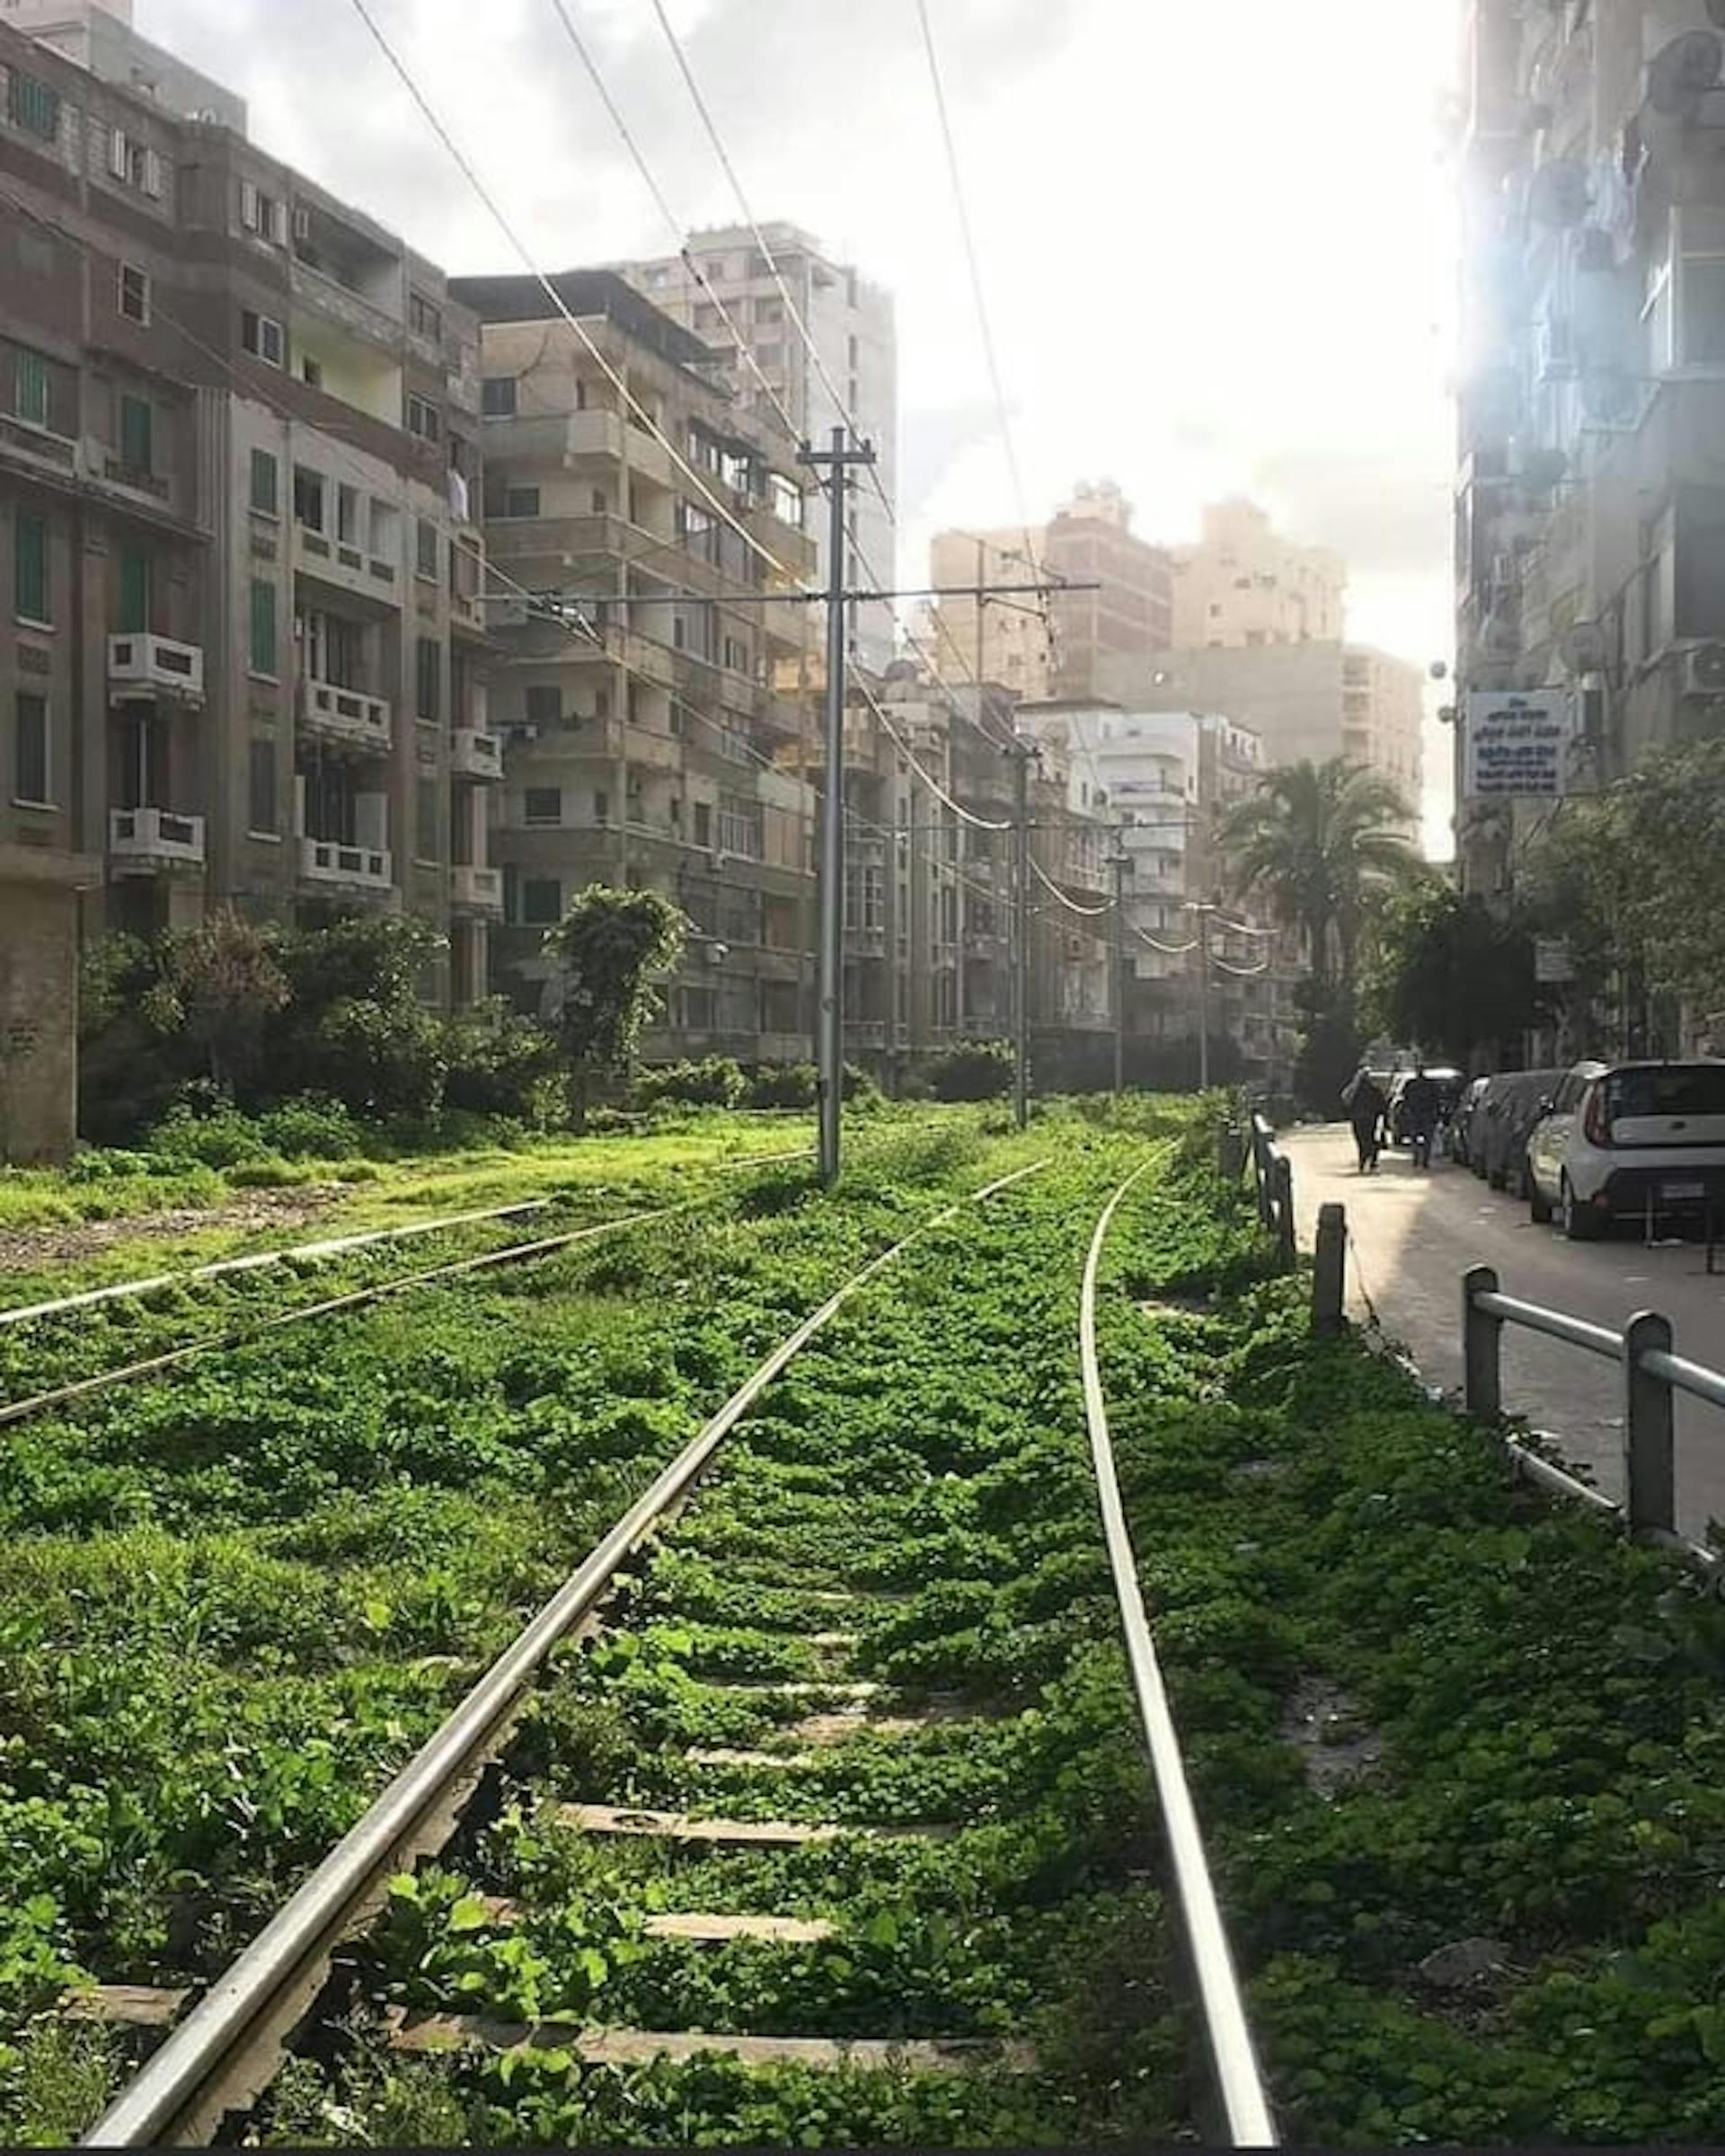 Une voie de tramway à Alexandrie, publiée par u/Different-Giraffe255 sur r/Egypt. (https://www.reddit.com/r/Egypt/comments/1152219/a_tram_track_in_alexandria/)